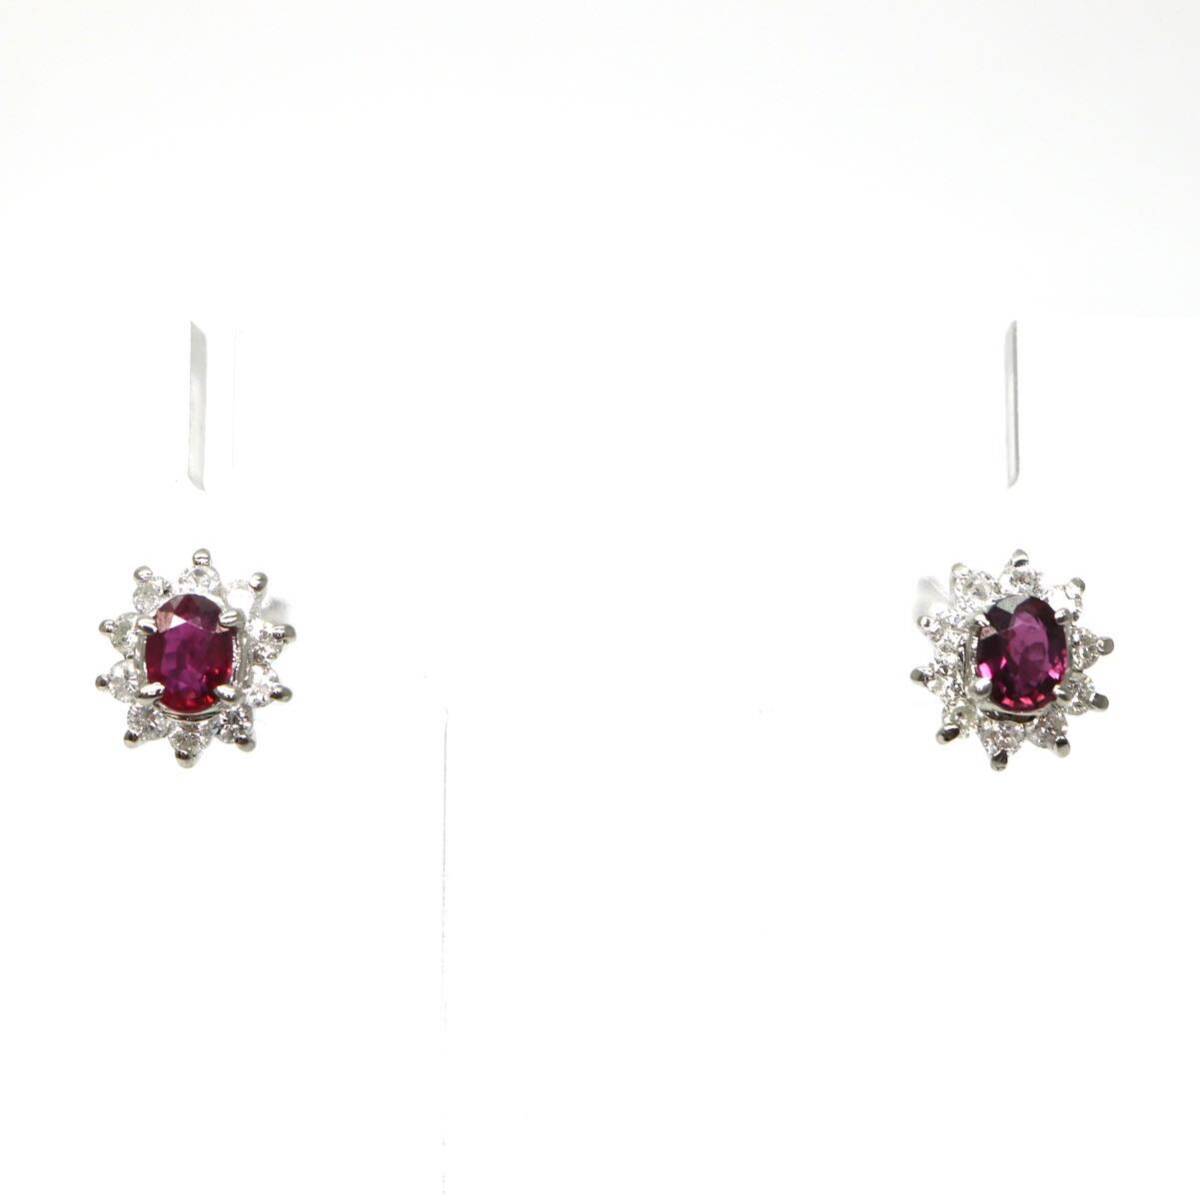 ソーティング付き!!◆Pt950 天然ルビー天然ダイヤモンド ピアス◆A 約2.0g ruby diamond ジュエリー jewelry pierce earring DI6/EA4